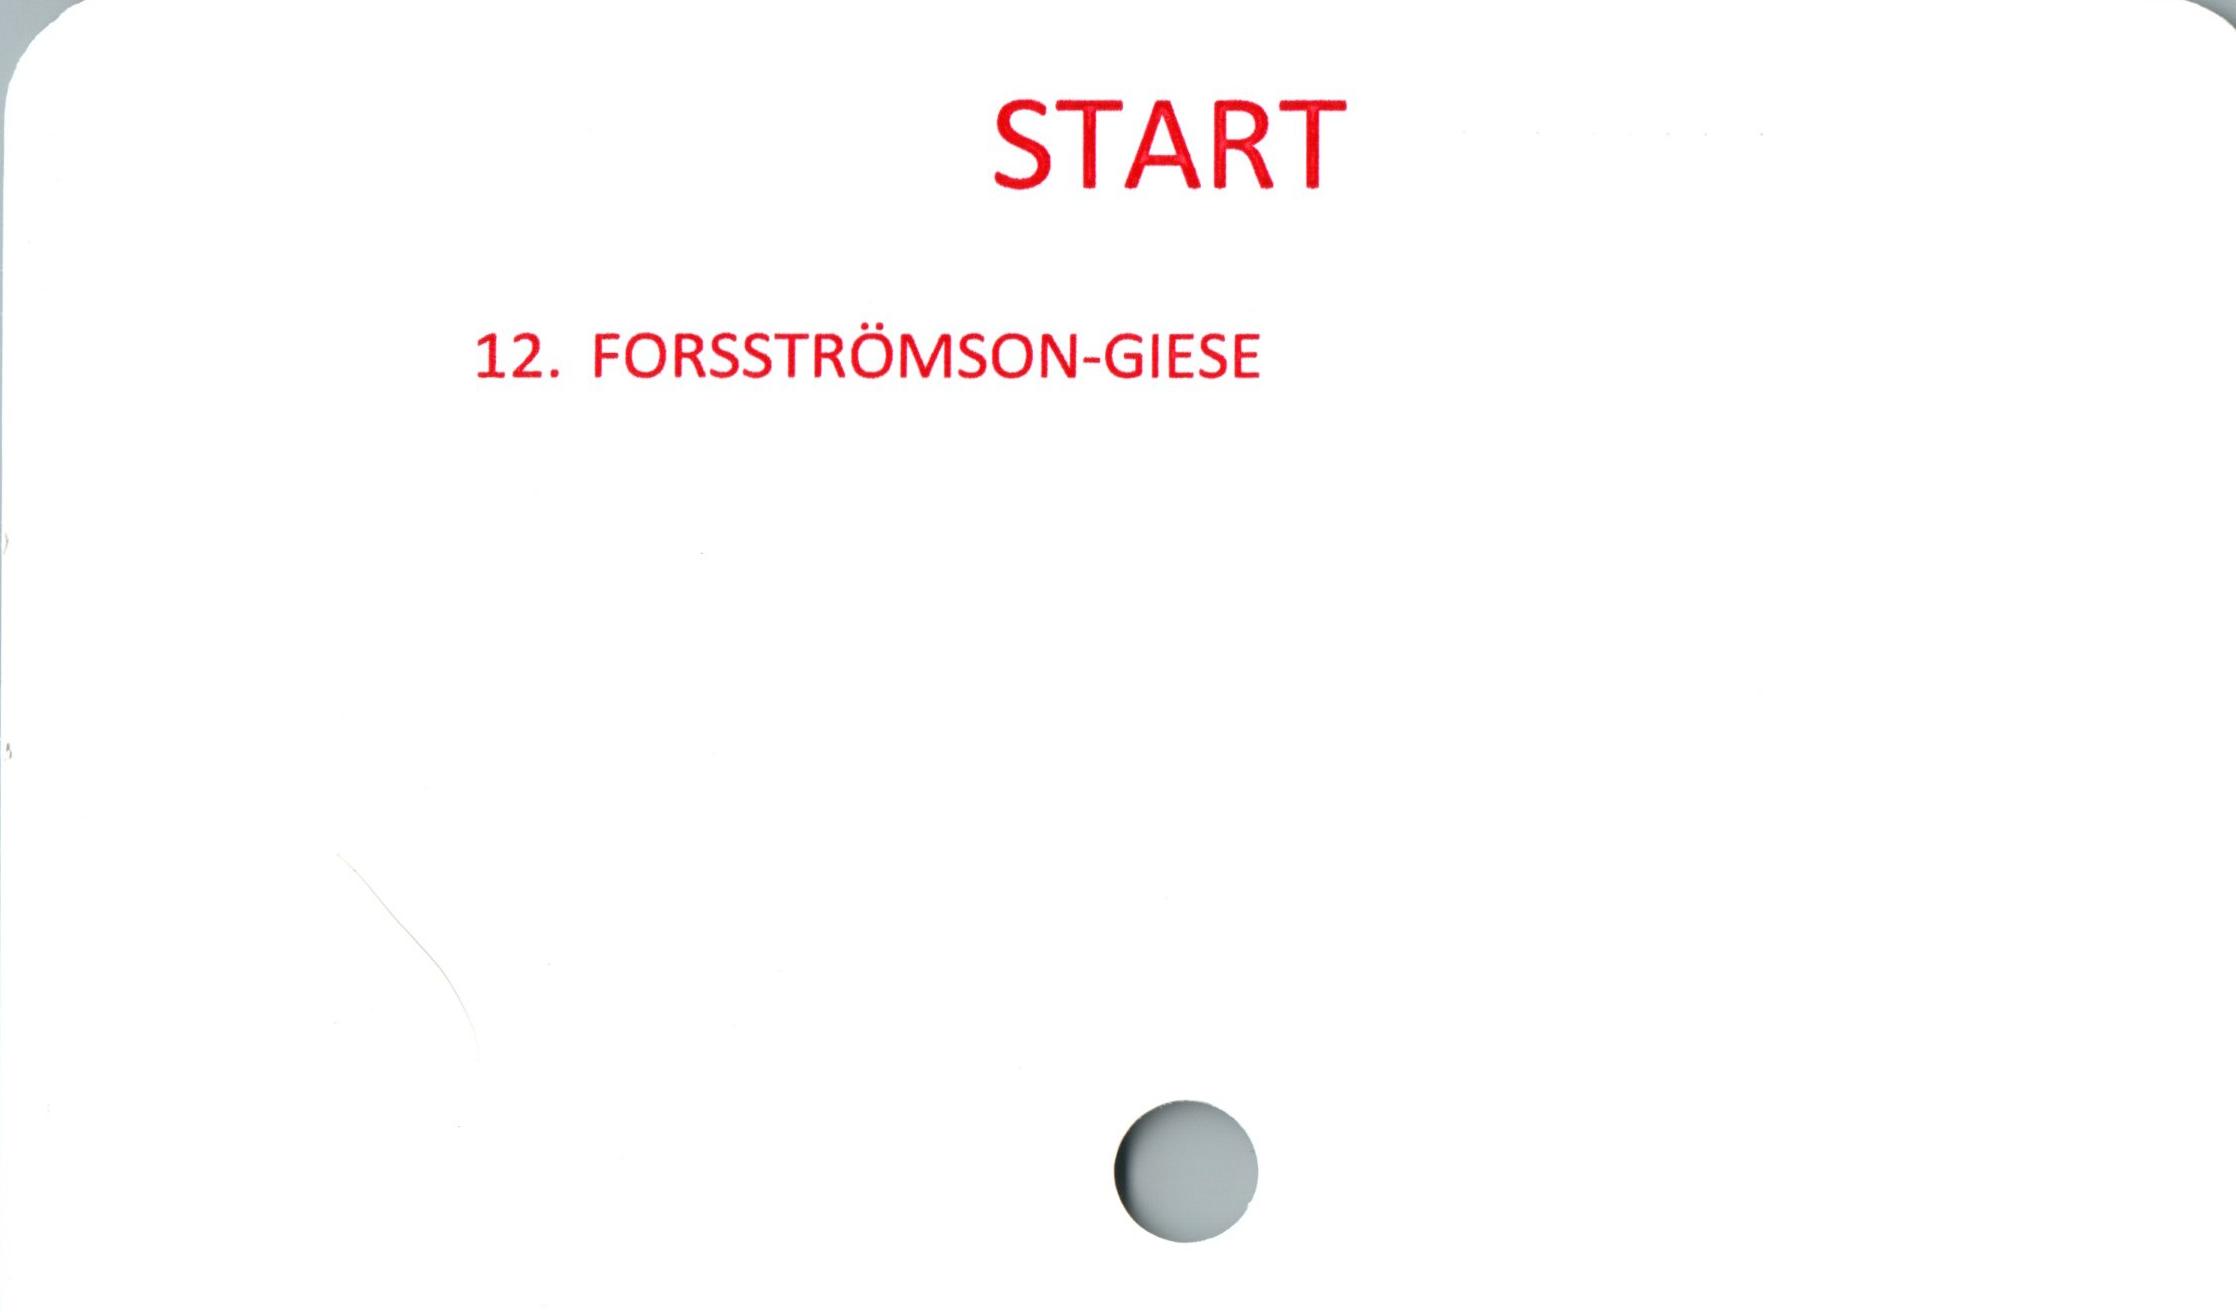  ﻿START

12. FORSSTRÖMSON-GIESE